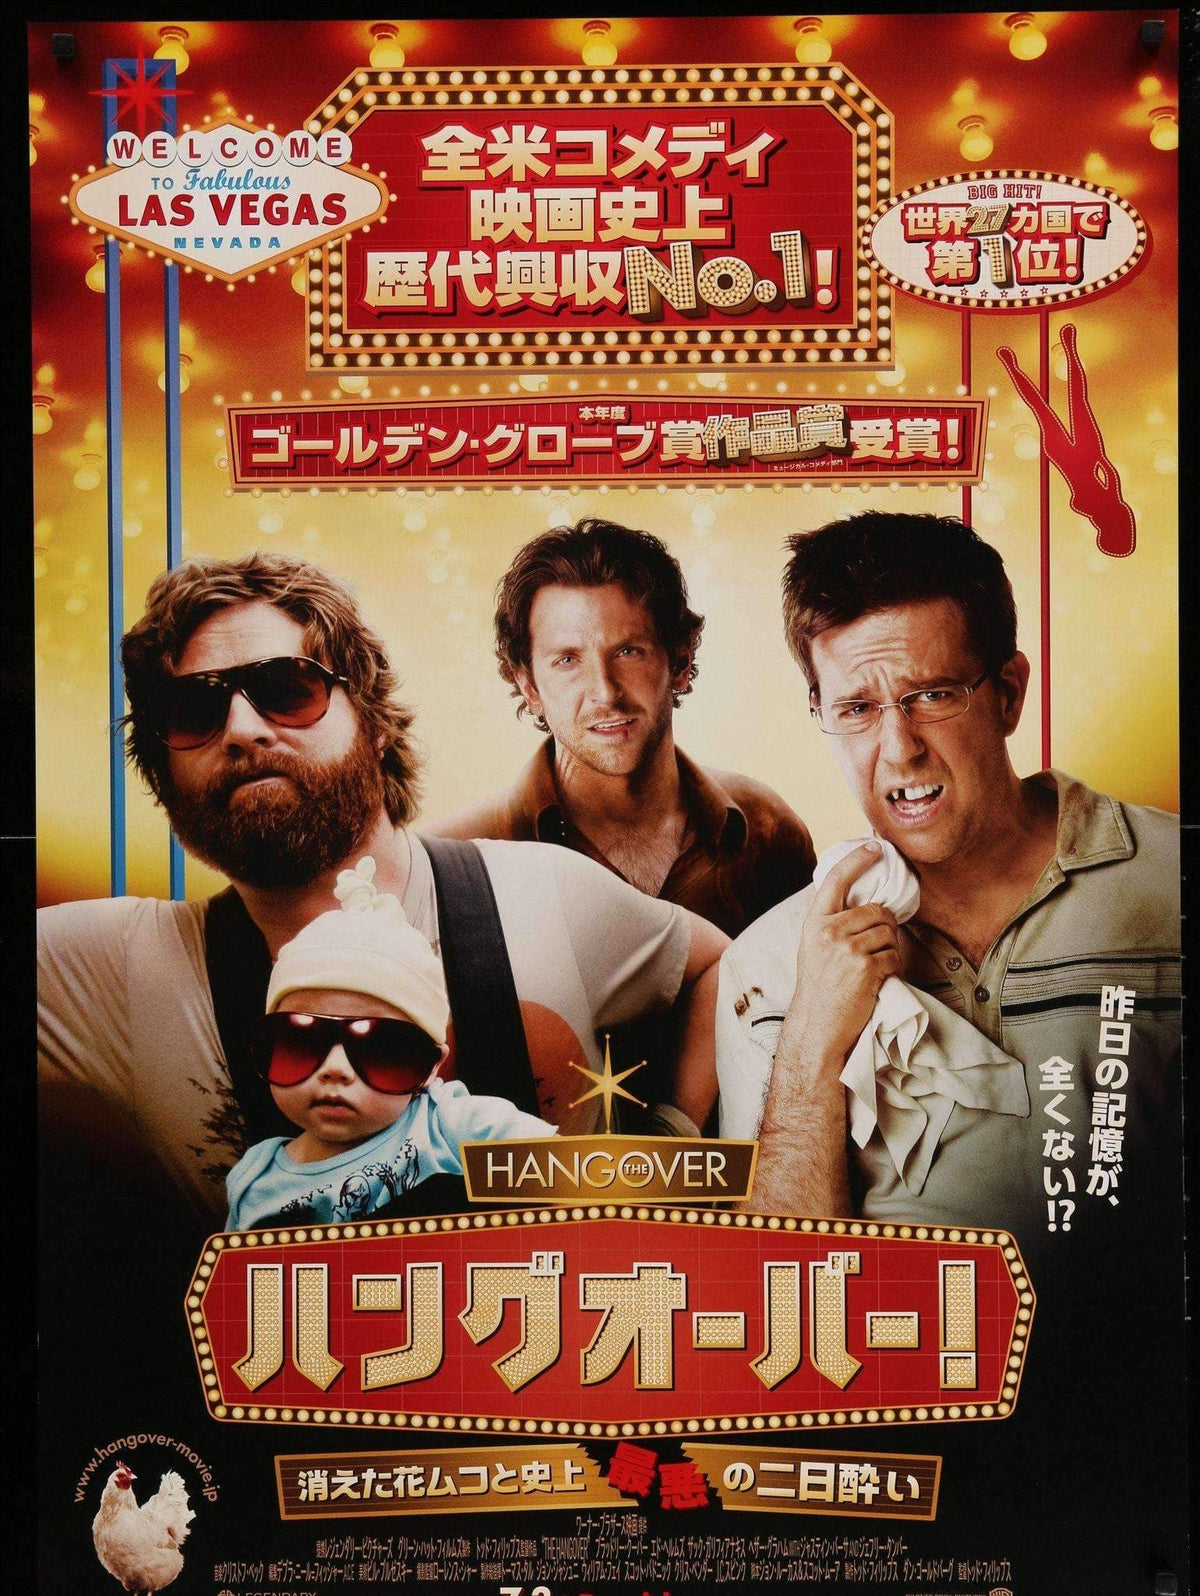 Hangover (2009) original movie poster for sale at Original Film Art